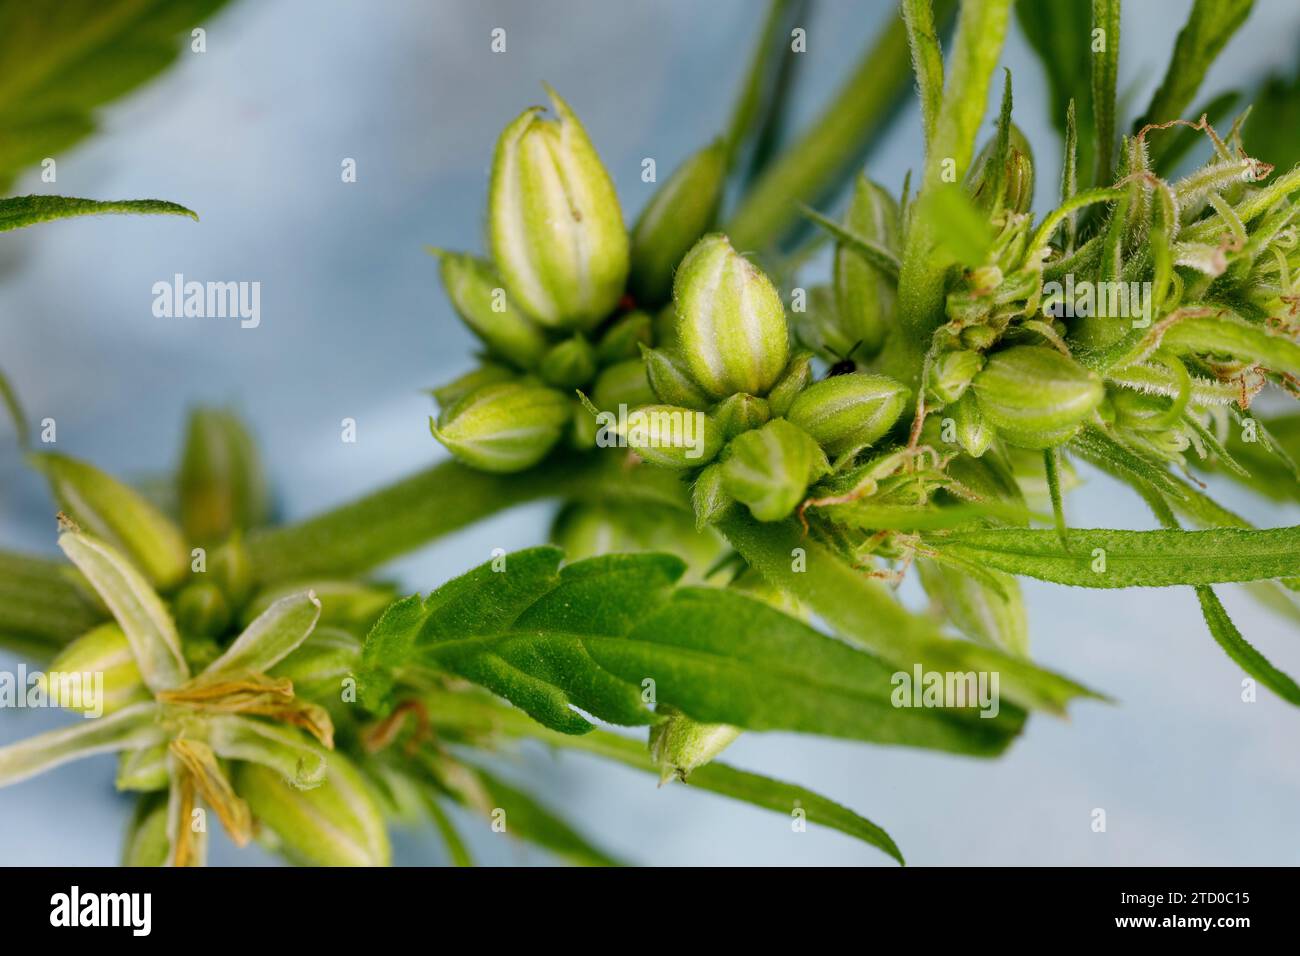 Chanvre indien, marijuana, mary jane (Cannabis sativa), fleurs mâles et bourgeons, gros plan Banque D'Images